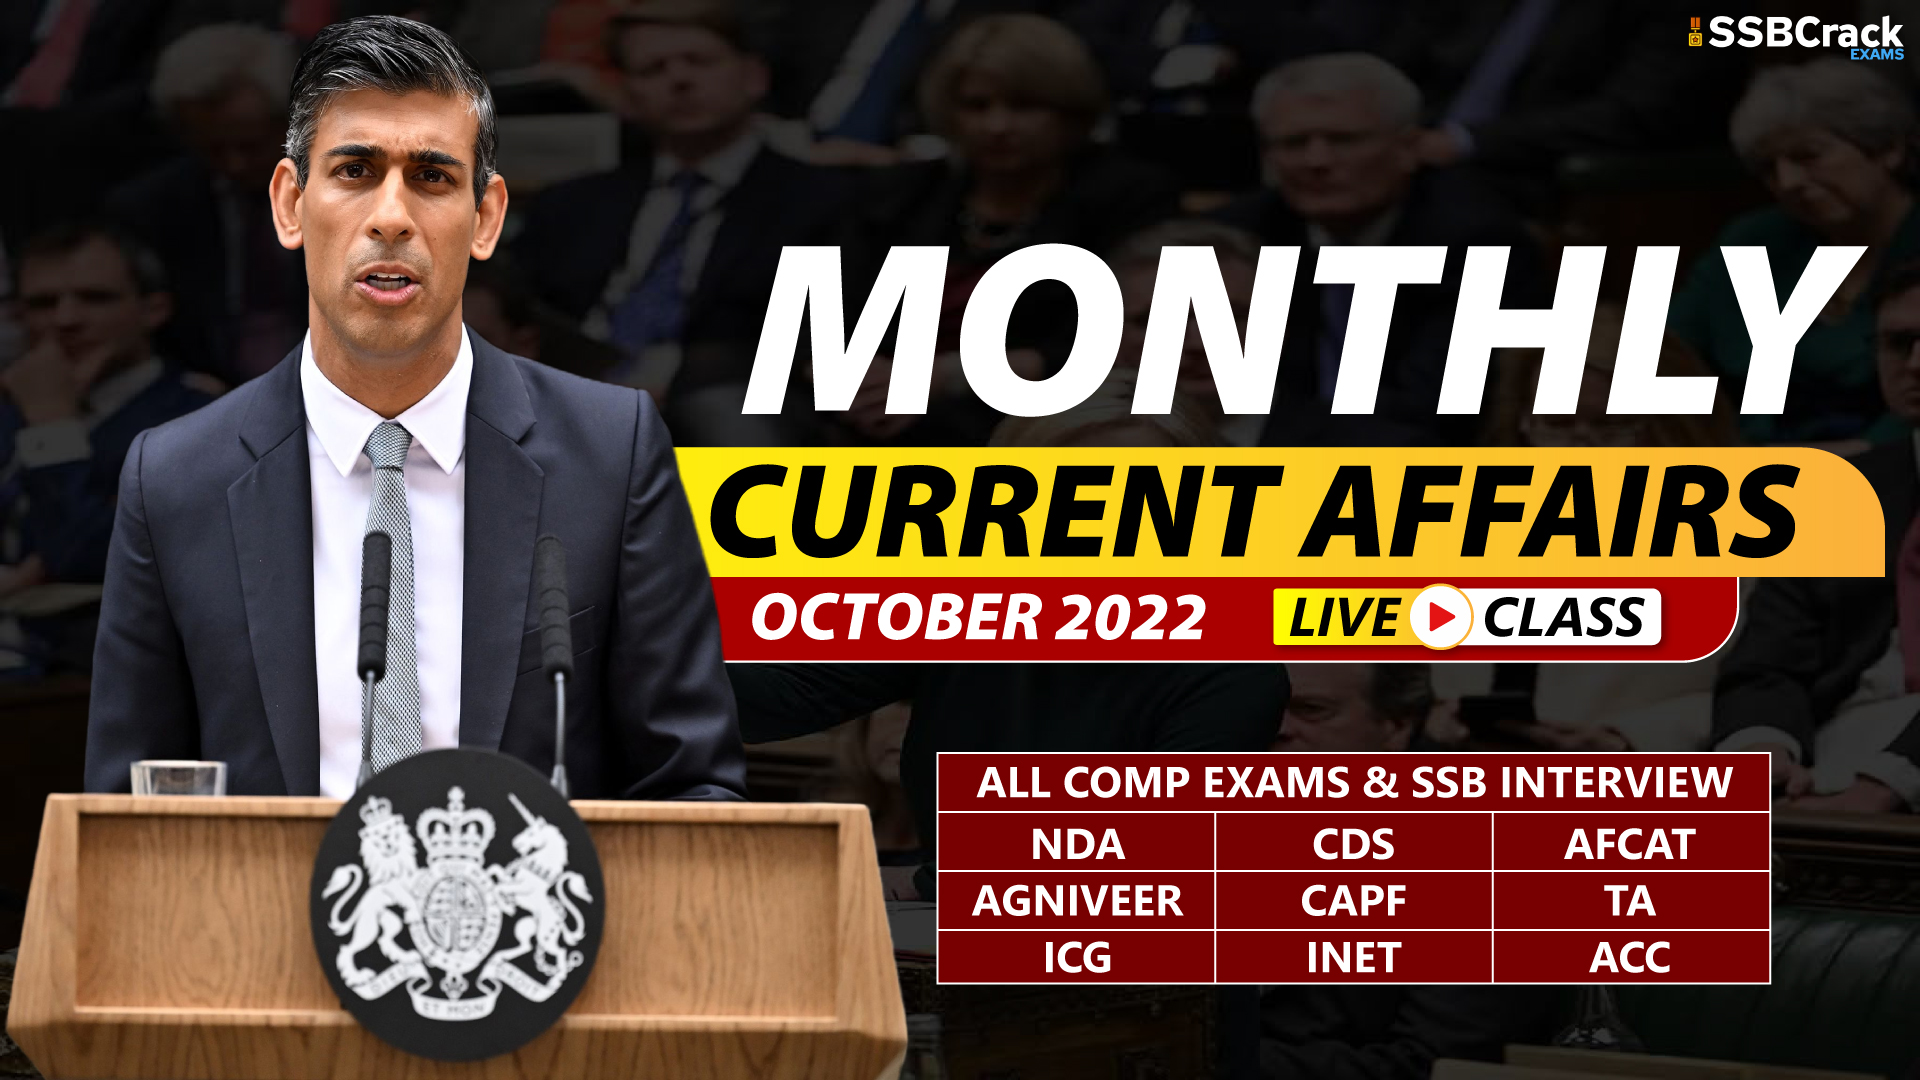 Current Affairs 11 October 2022